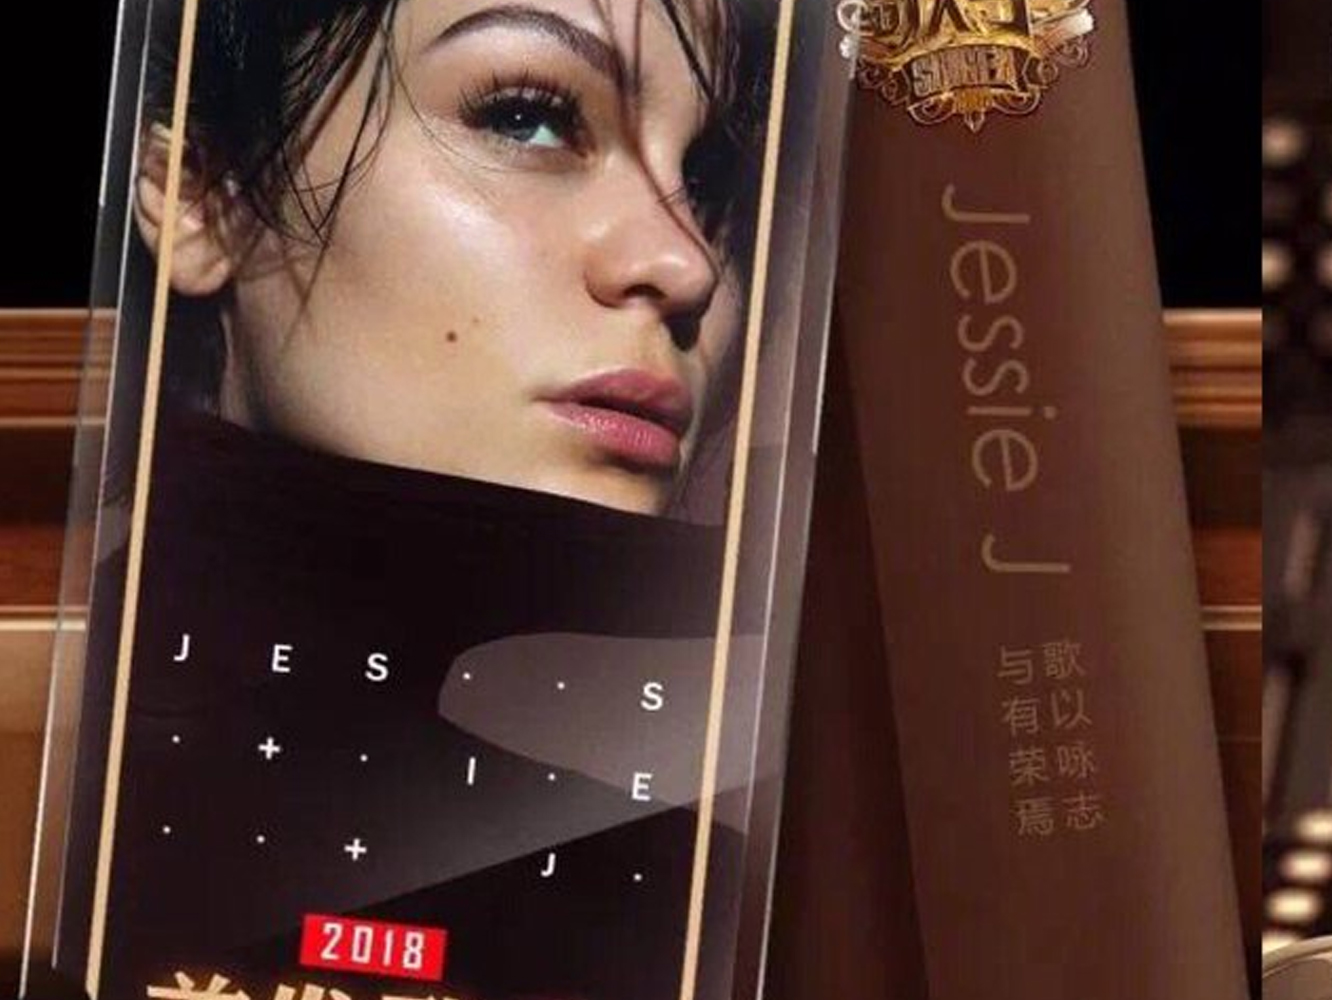  Jessie J toca fondo y competirá, junto a cantantes chinos, en un talent-show asiático